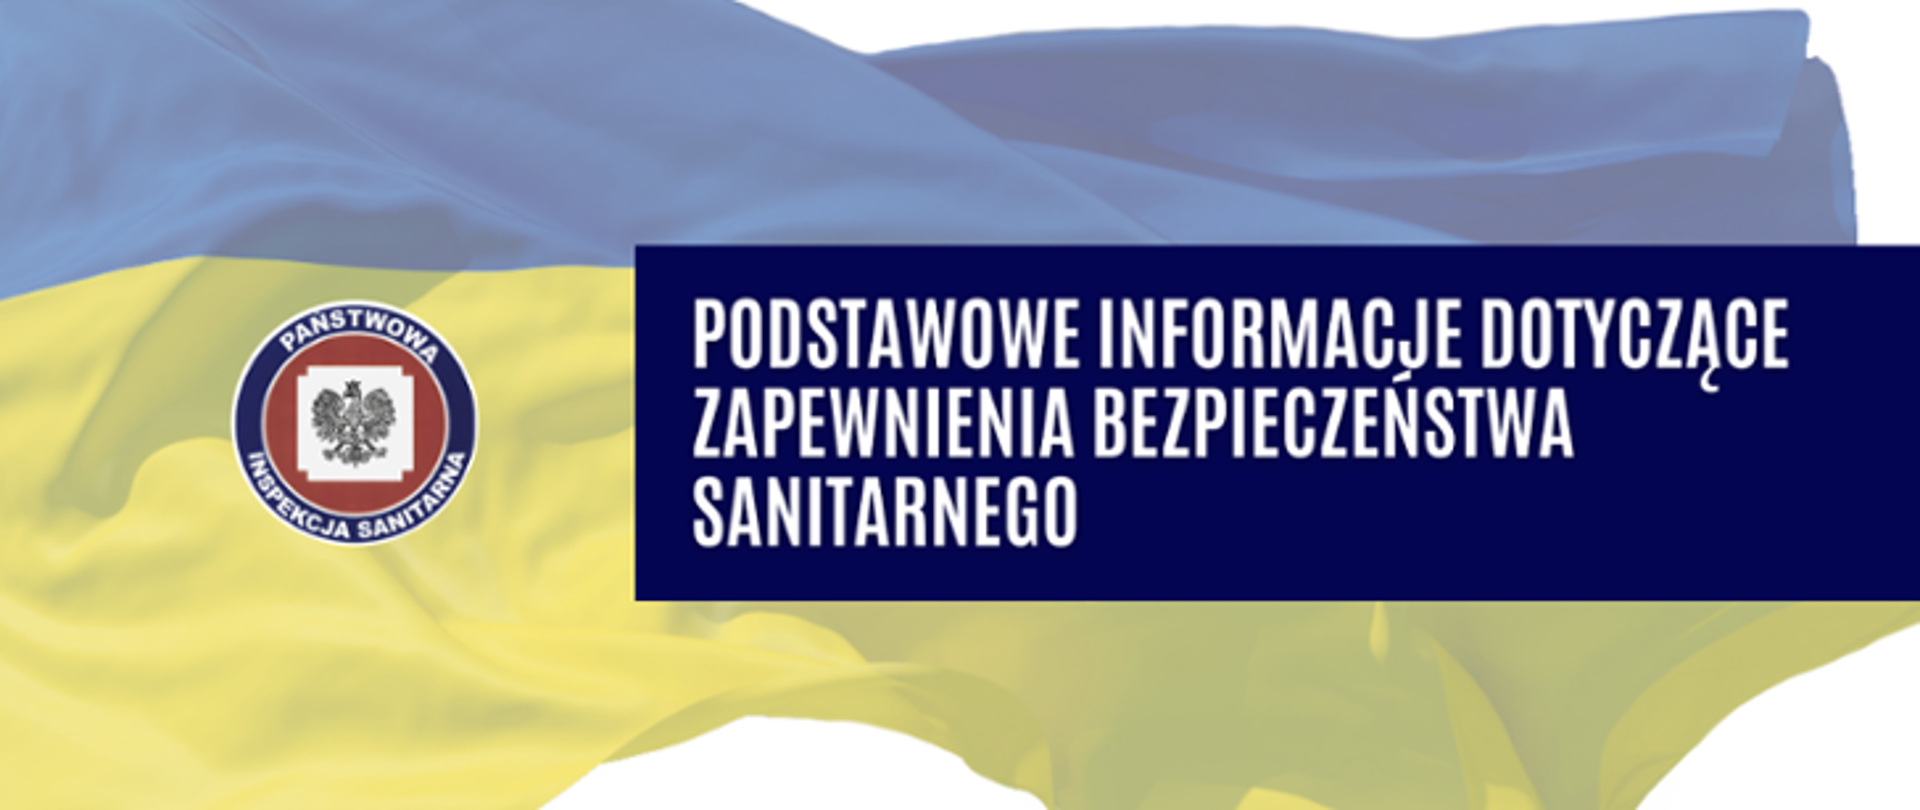 w tle flaga Ukrainy, logo PIS oraz napis "Podstawowe informacje dotyczące zapewnienia bezpieczeństwa sanitarnego"